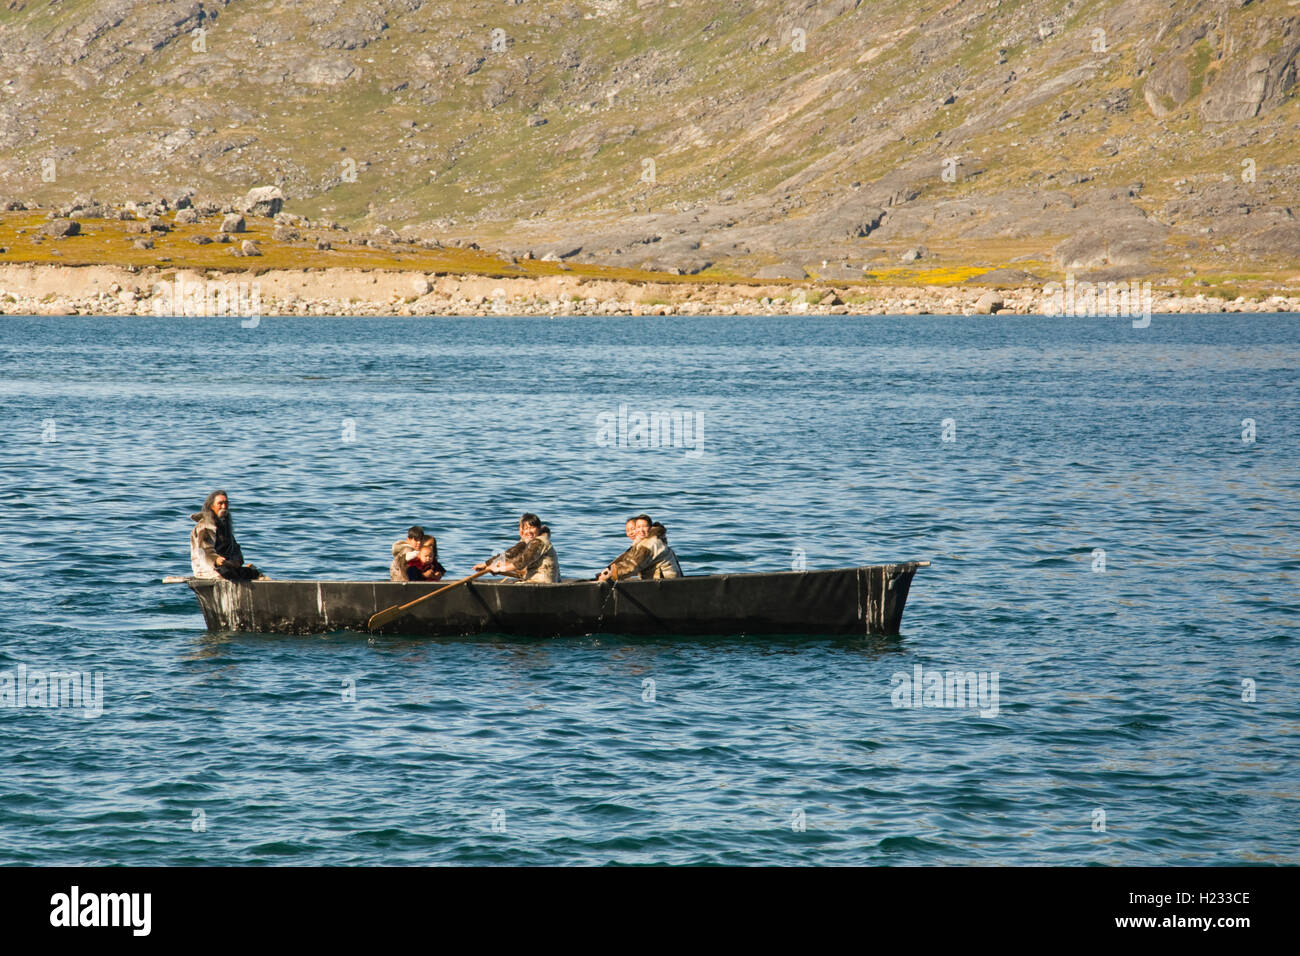 EUROPE, Groenland, Municipalité Kujalleq, Nanortalik (Lieu de l'ours polaire), les Inuits l'homme en costume traditionnel avec kayak Banque D'Images